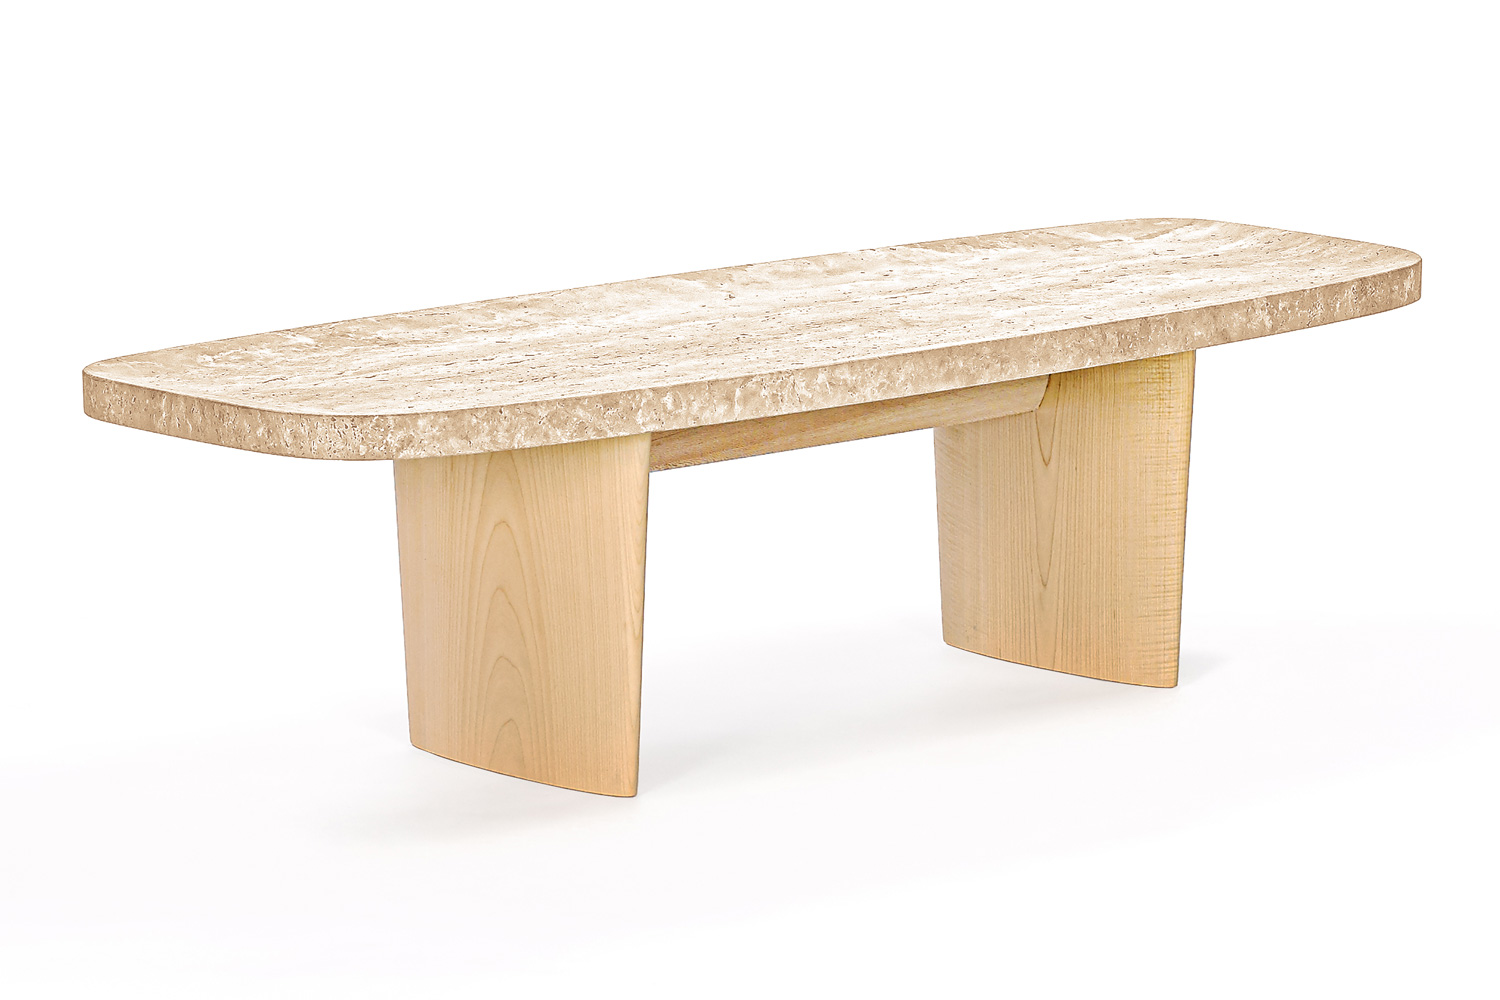 クラシコン マテリア サイド テーブル / ClassiCon MATÉRIA SIDE TABLE 